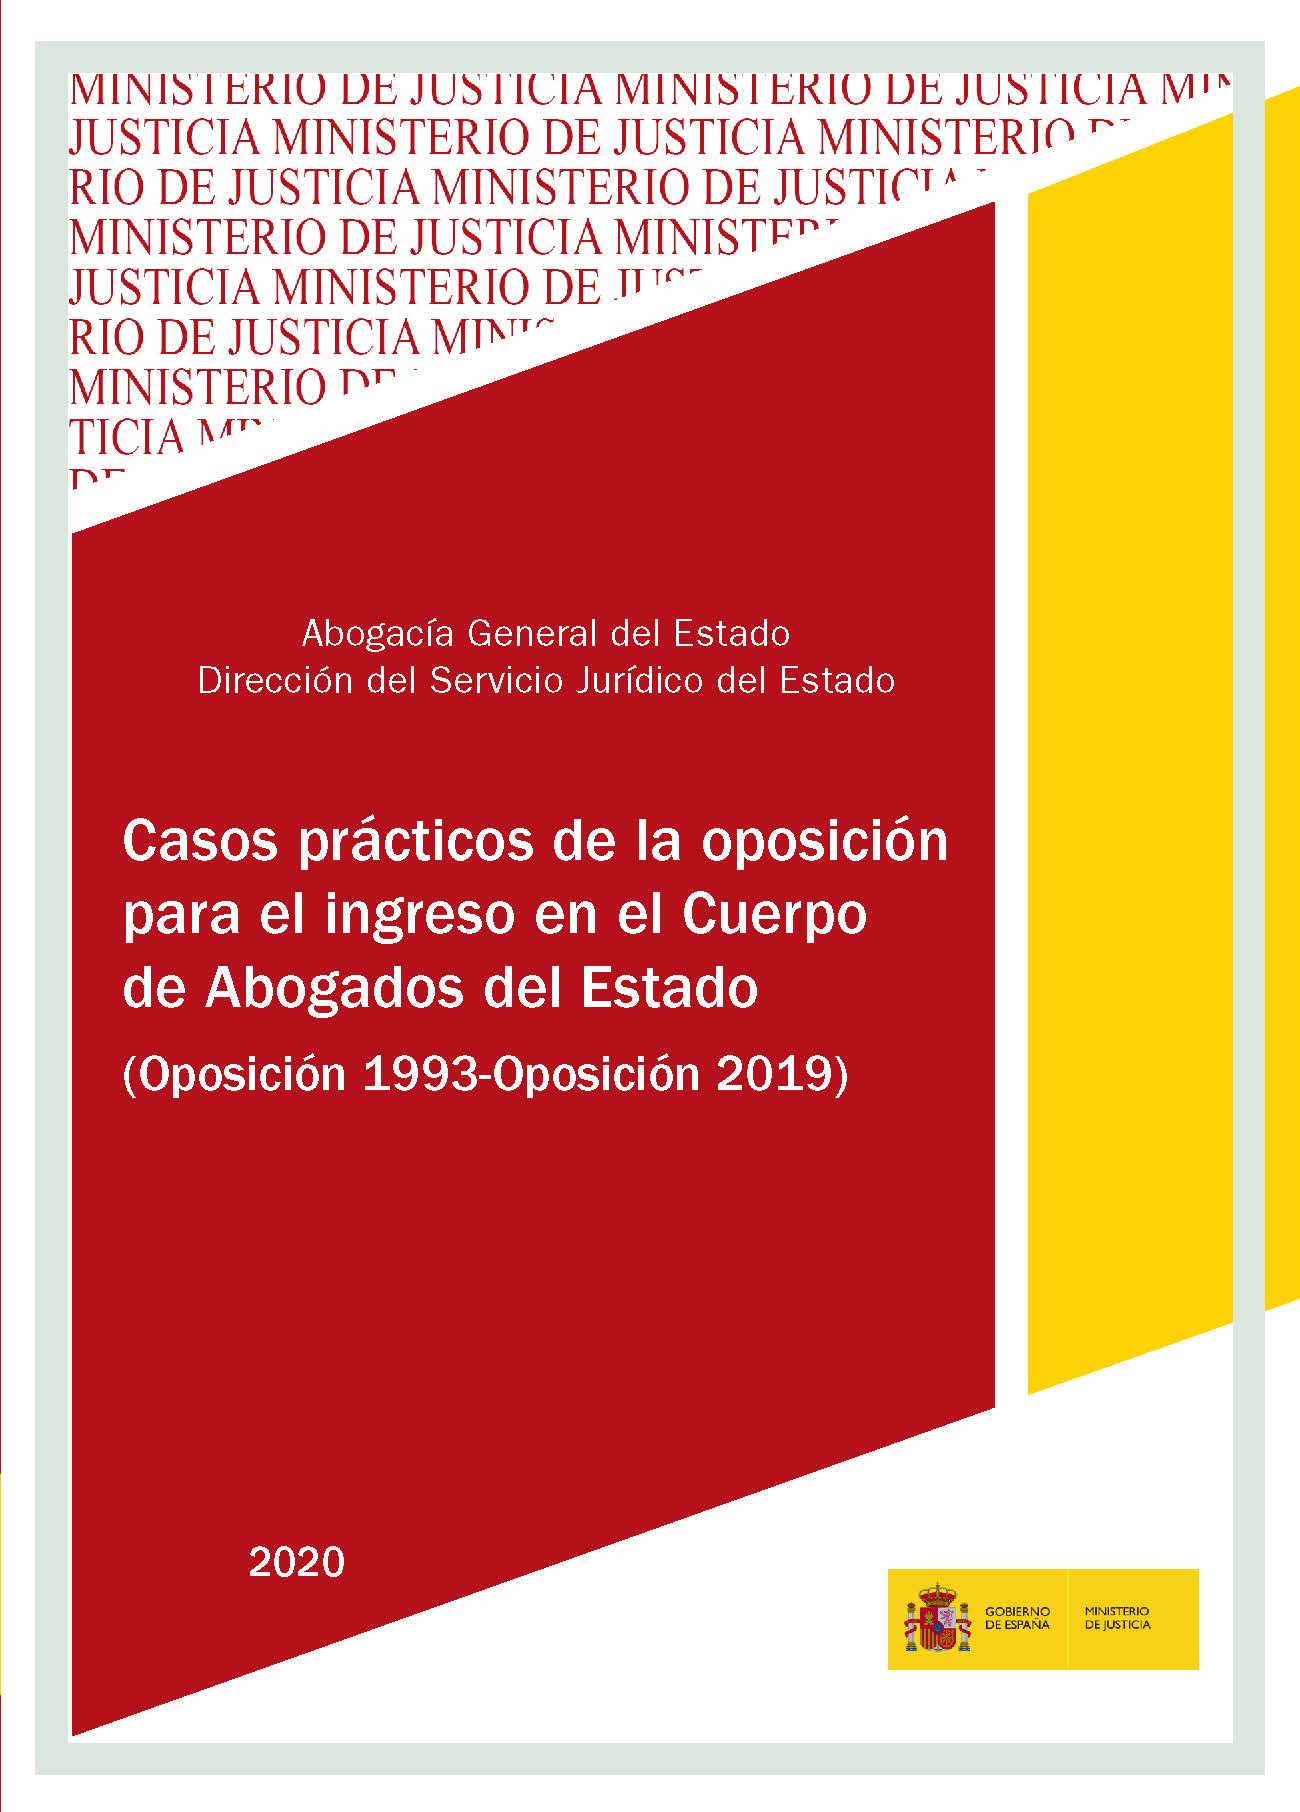 View details of CASOS PRÁCTICOS DE LA OPOSICIÓN PARA EL INGRESO EN EL CUERPO DE ABOGADOS DEL ESTADO. 2020